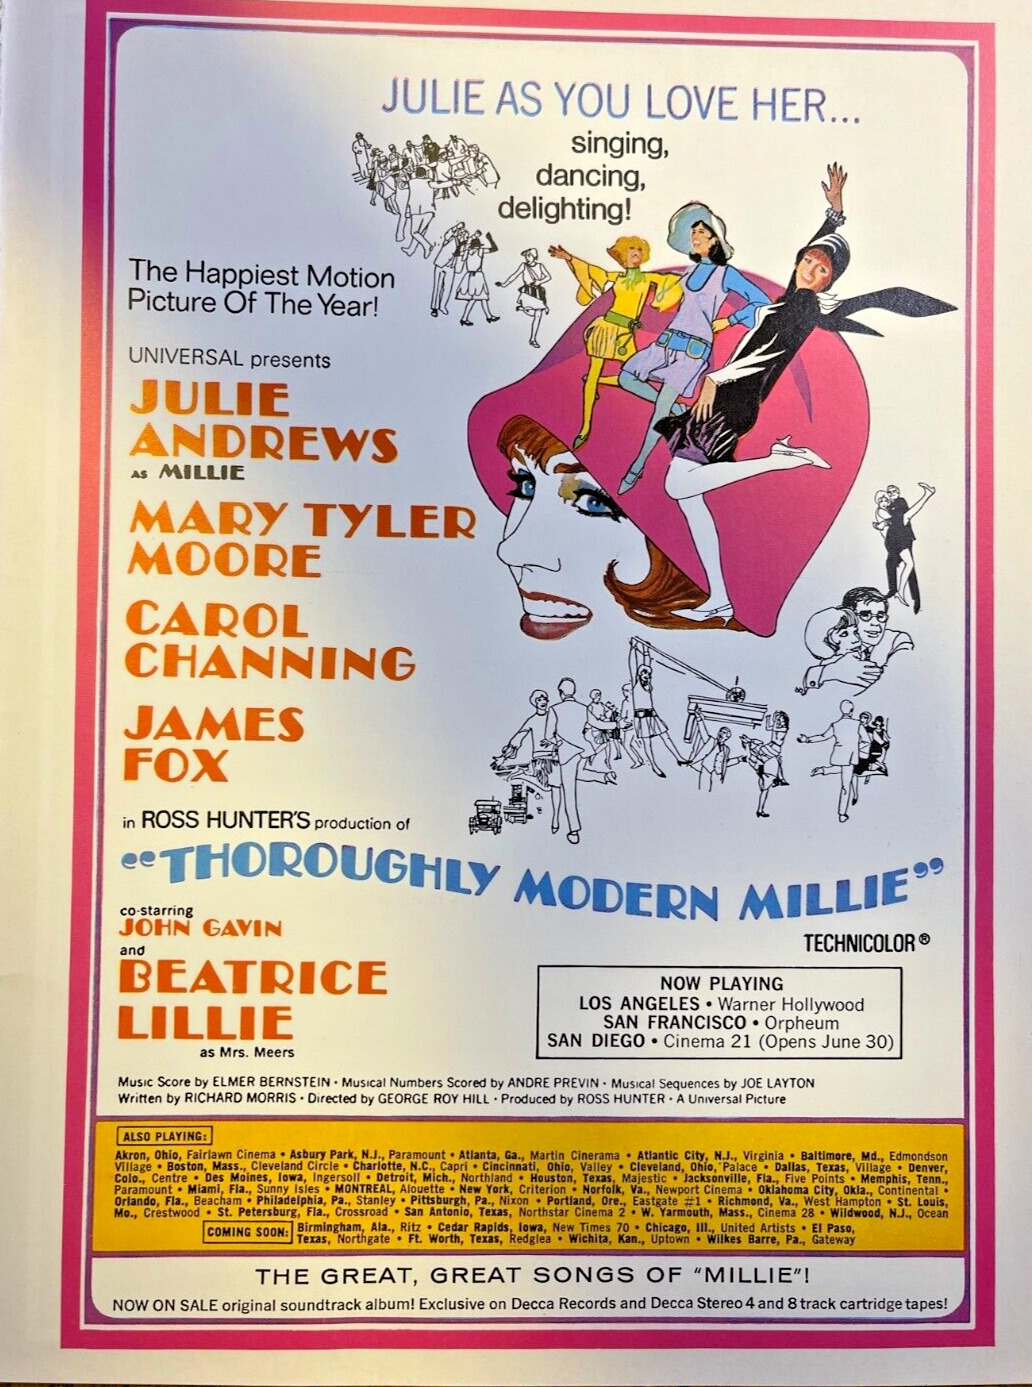 1967 Vintage Magazine Advertisement Thourougly Moddern Millie